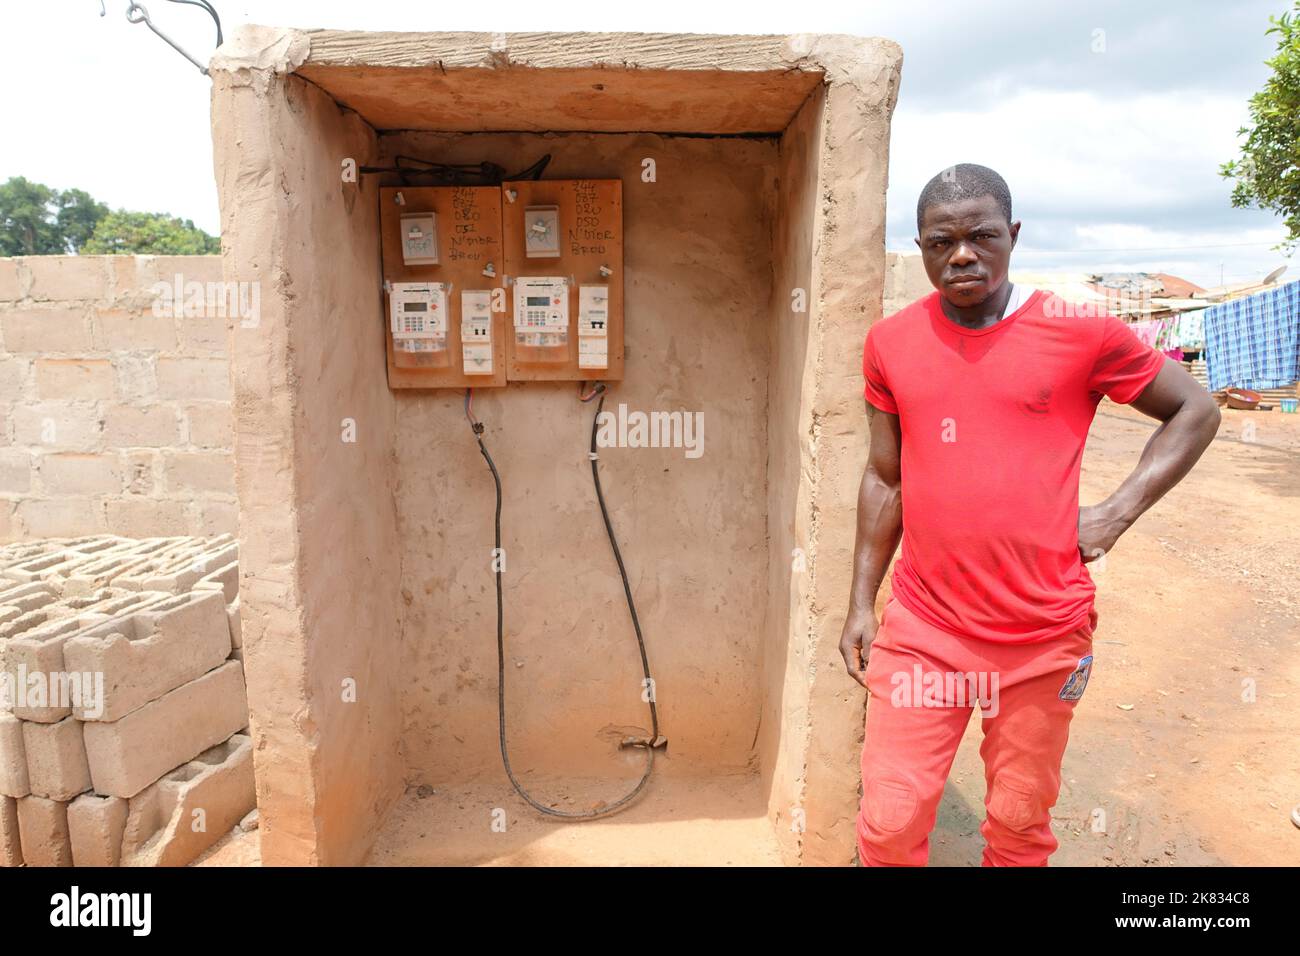 Un résident pose à côté de son nouveau compteur d'électricité dans un village rural pauvre de la côte d'IIvory Banque D'Images